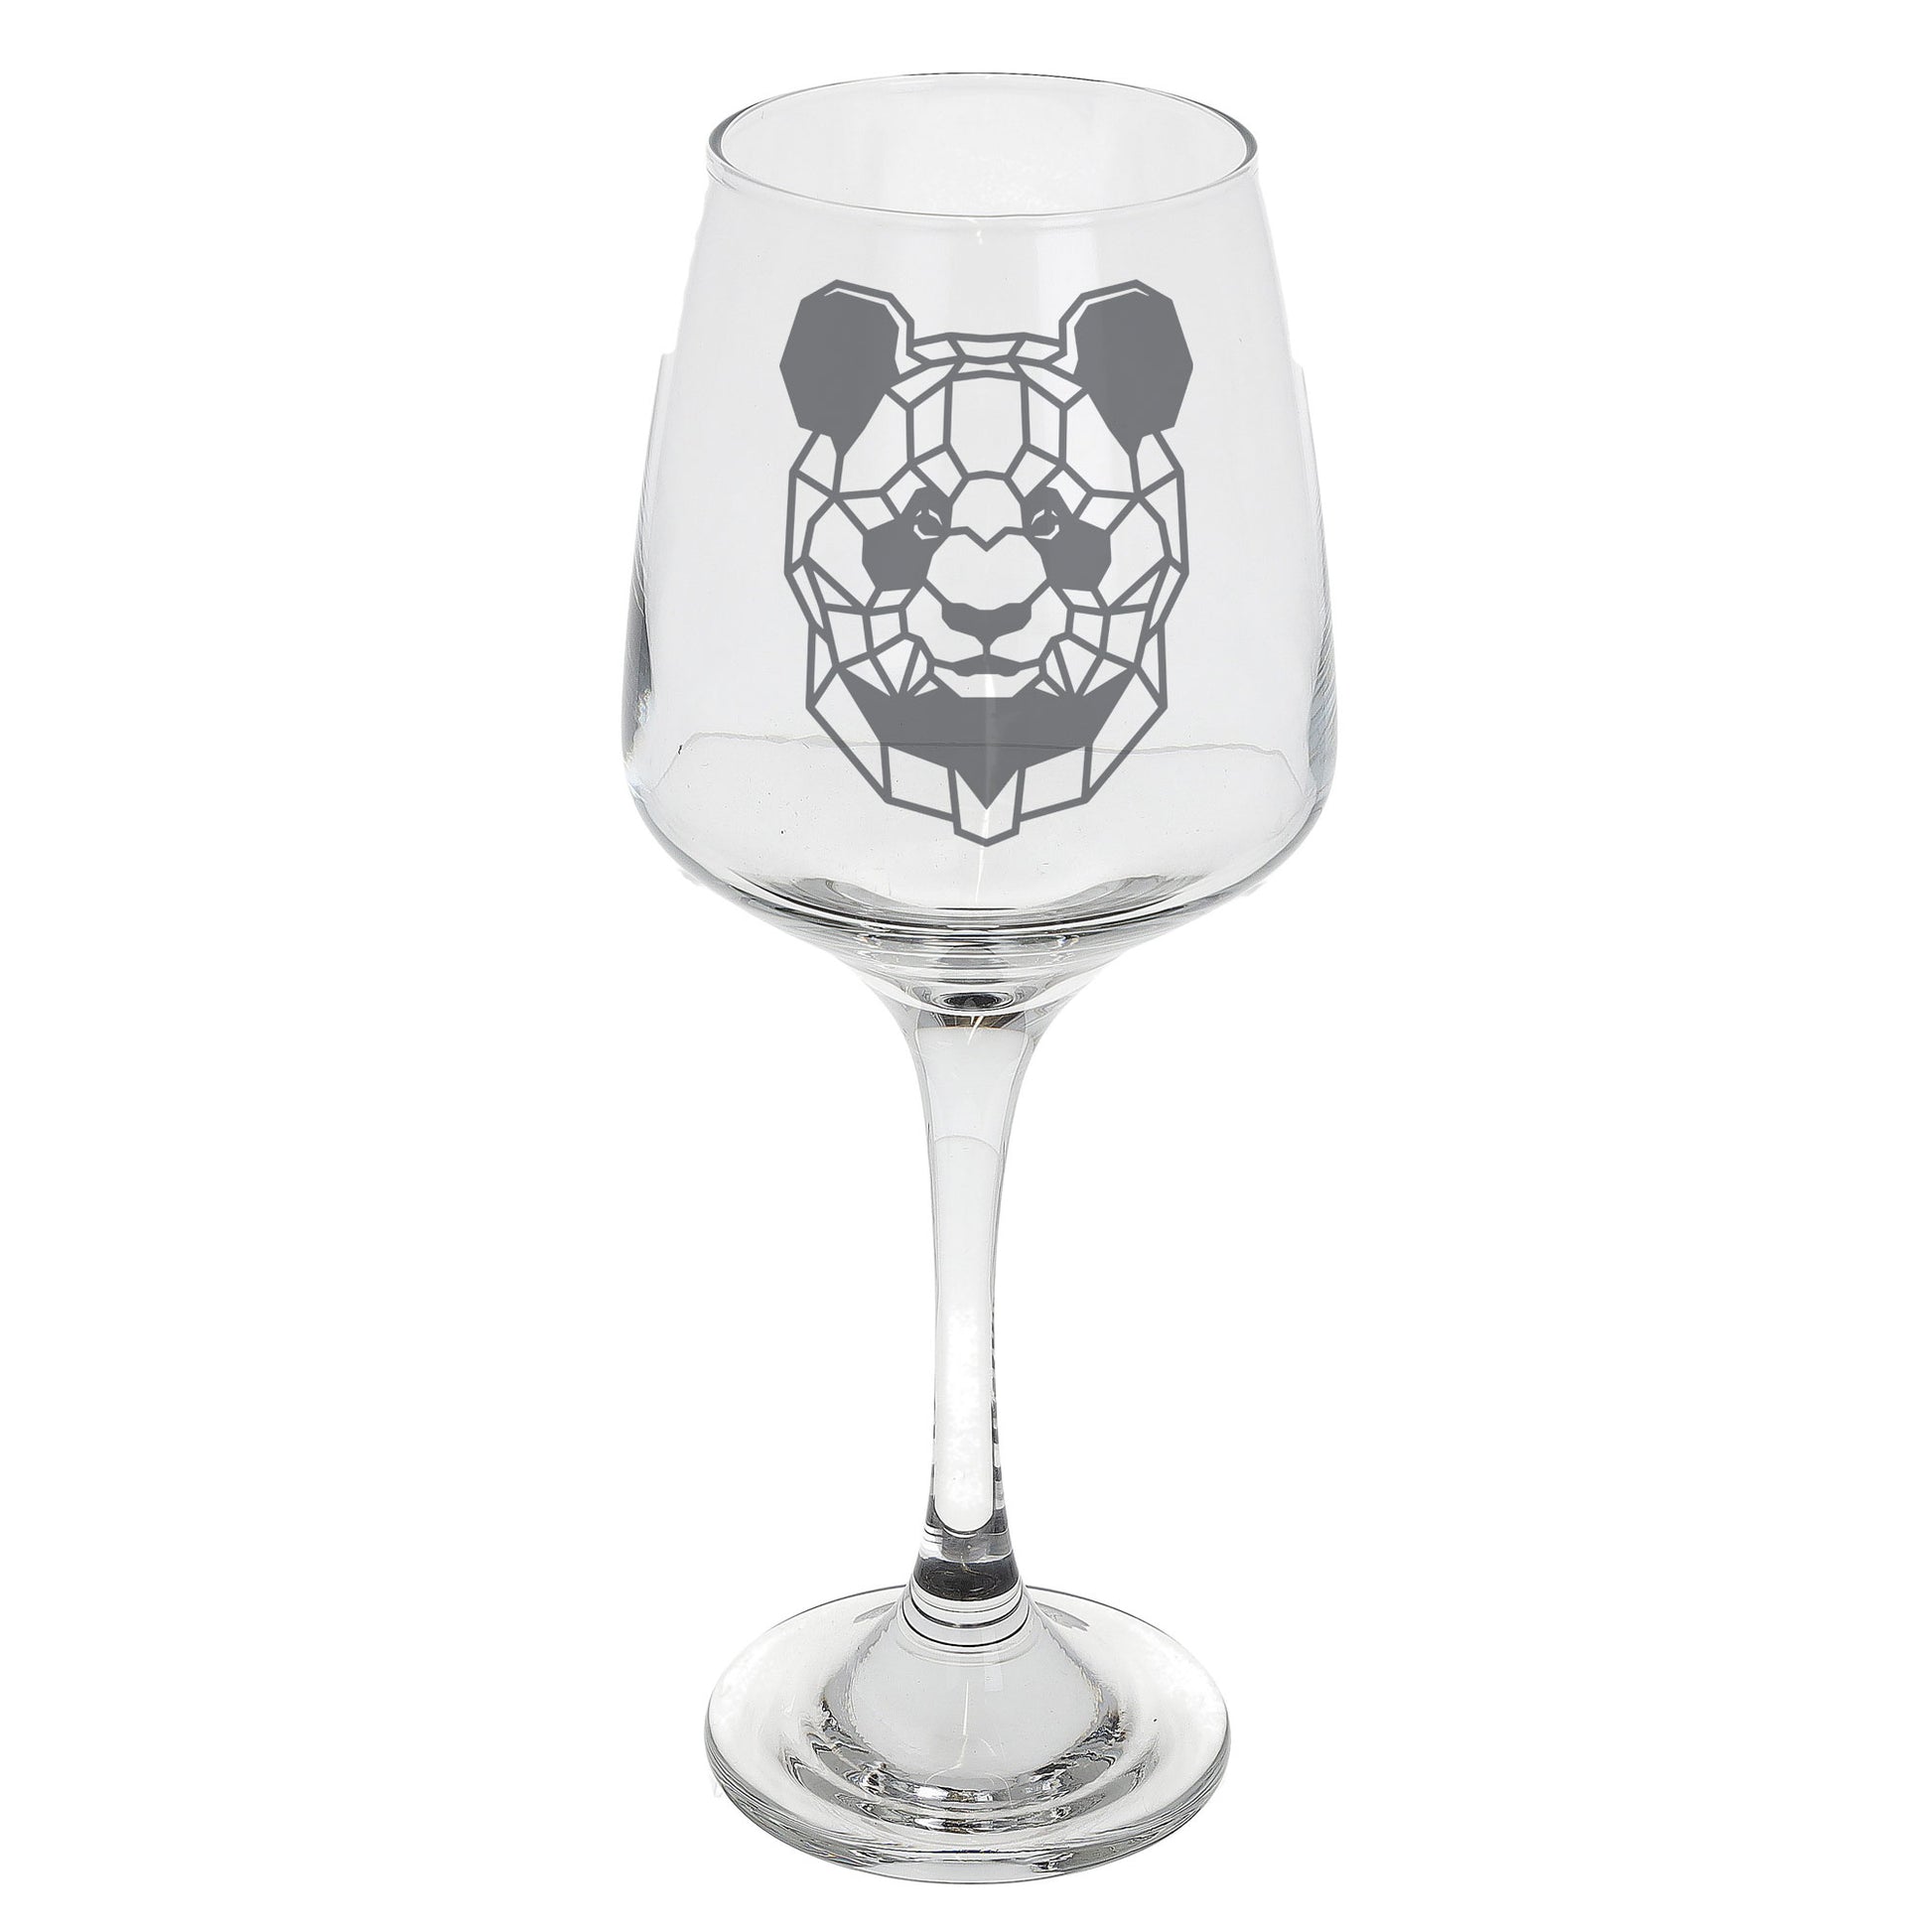 Panda Engraved Wine Glass  - Always Looking Good -   